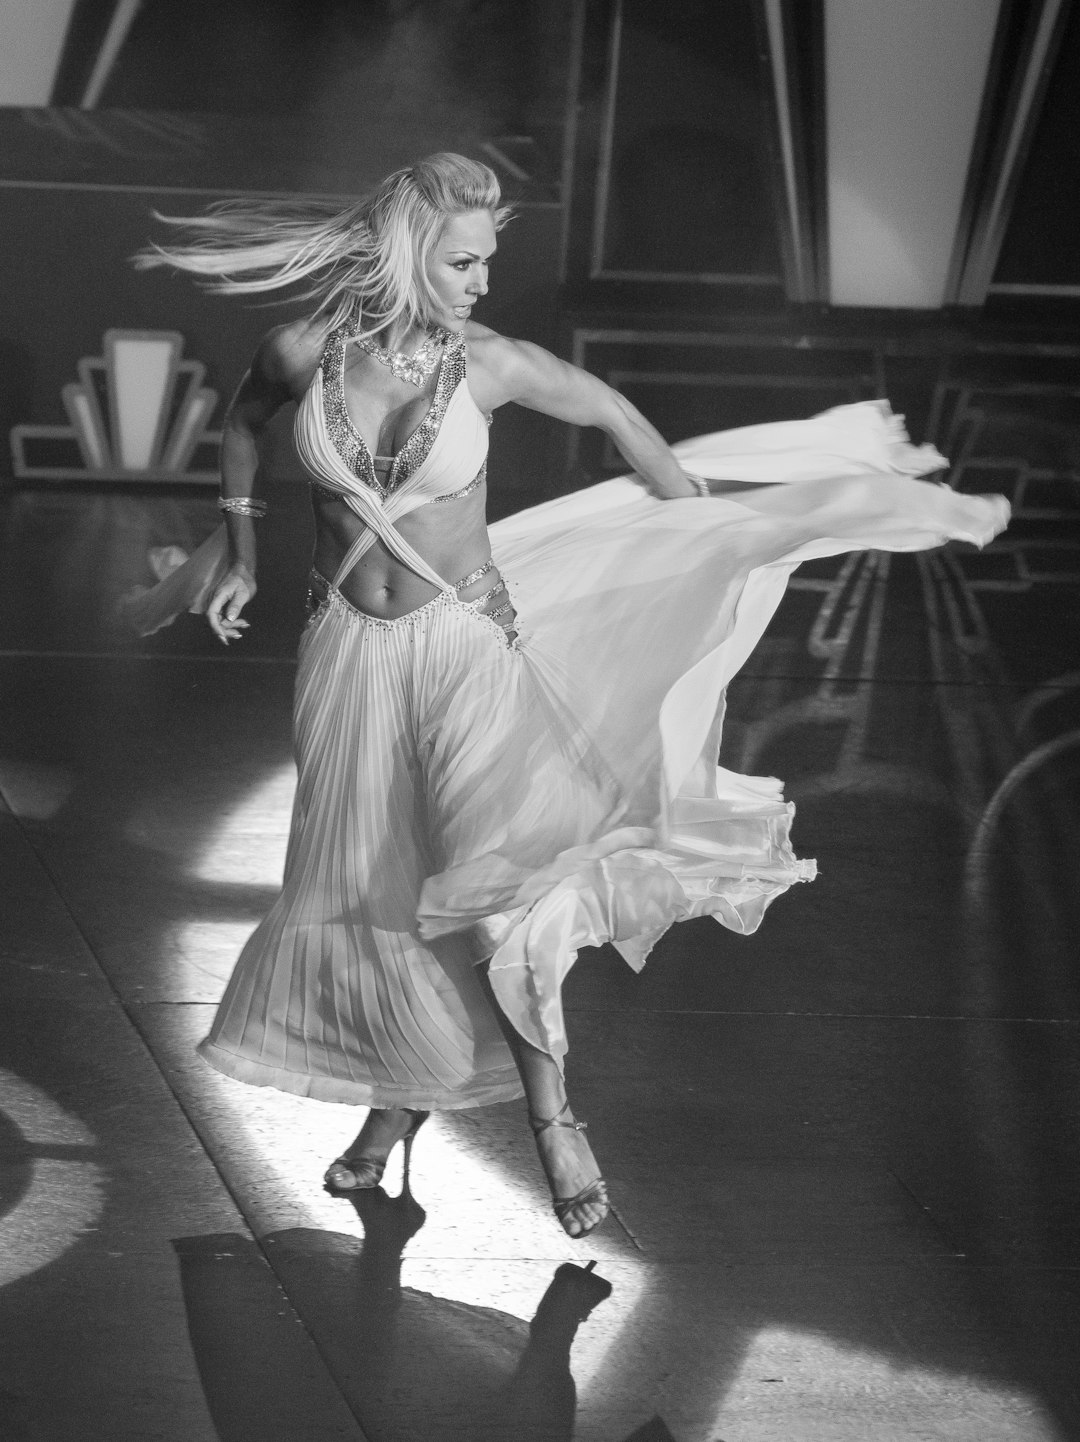 Она танцует в белом платье смотрит тайно. Танцует в белом платье. Девушка в белом платье танец. Фото танцующих девушек блондинок. Черное белая Танцующая девушка эпоха.